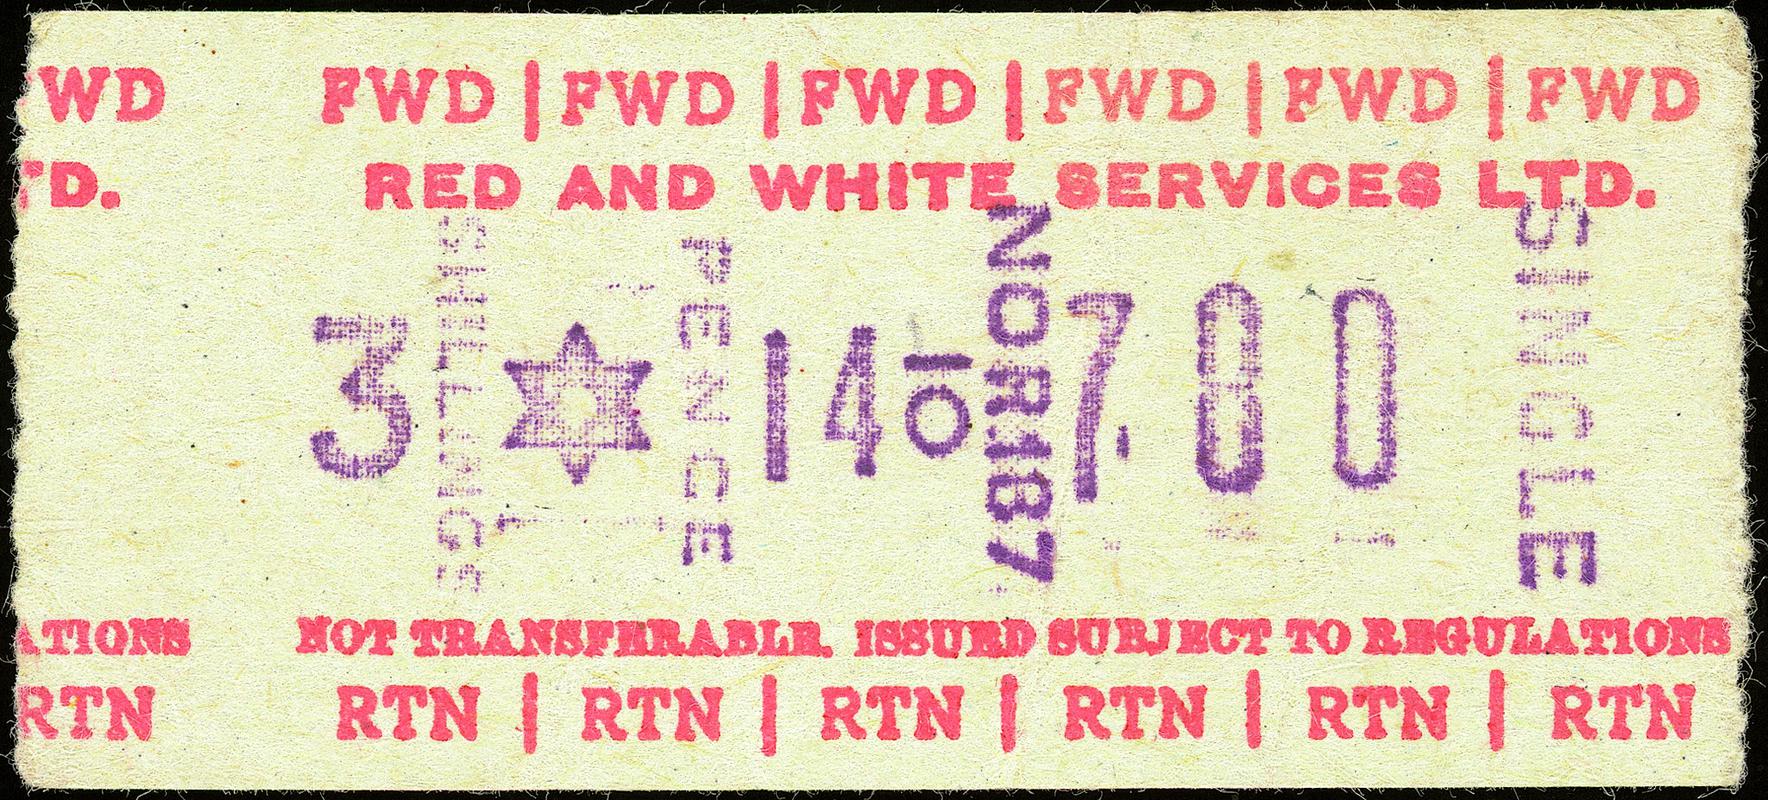 Red & White Services Ltd. bus ticket